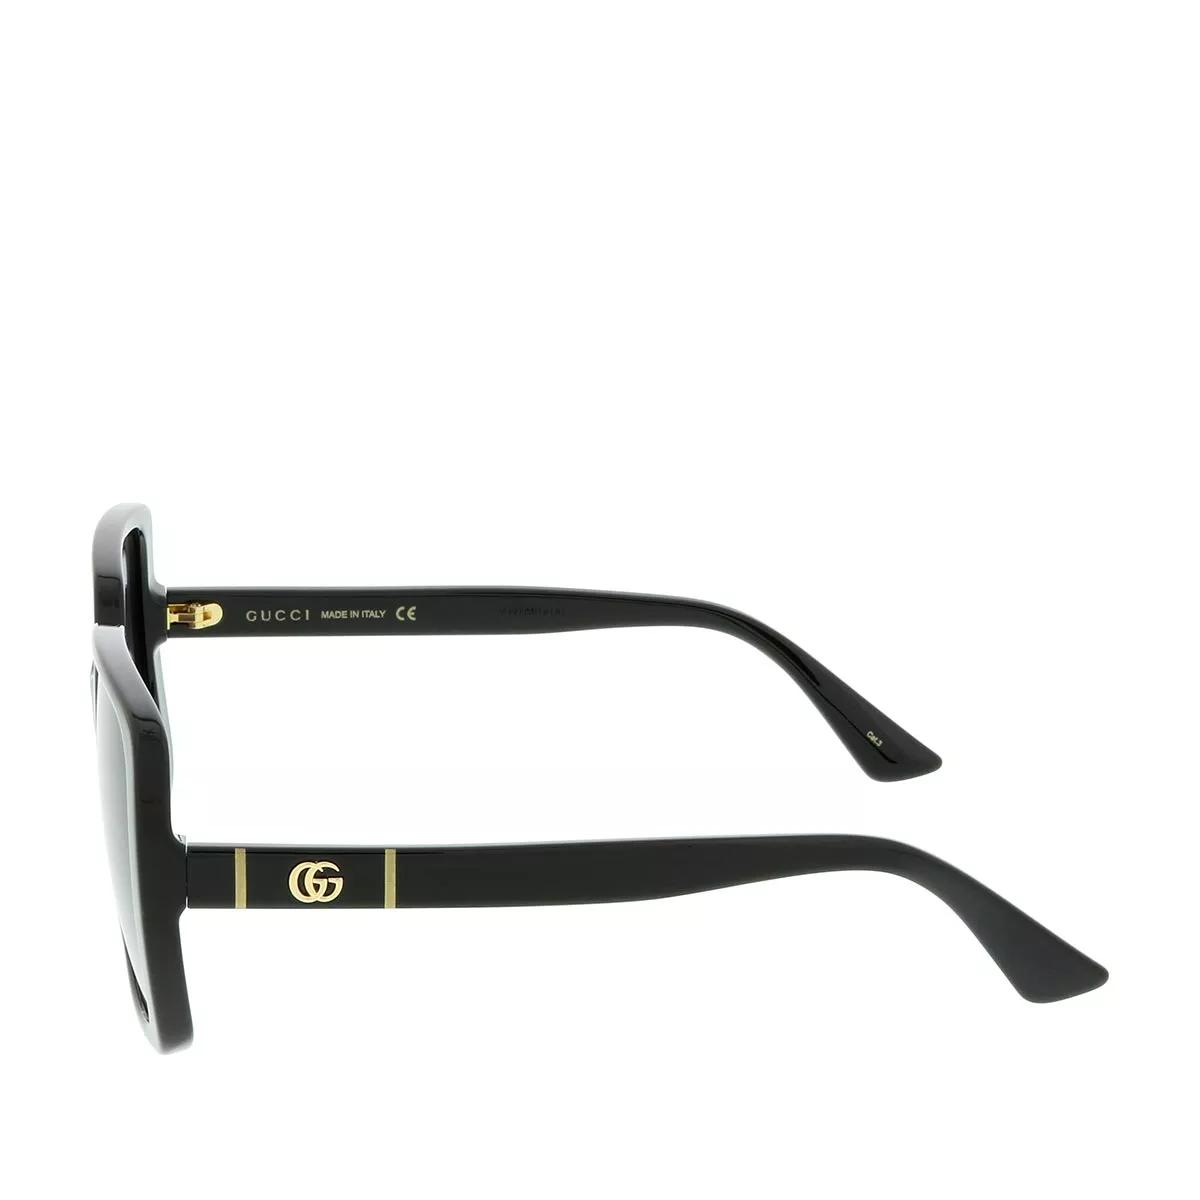 Gucci Winter Sports Goggles & Sunglasses for sale